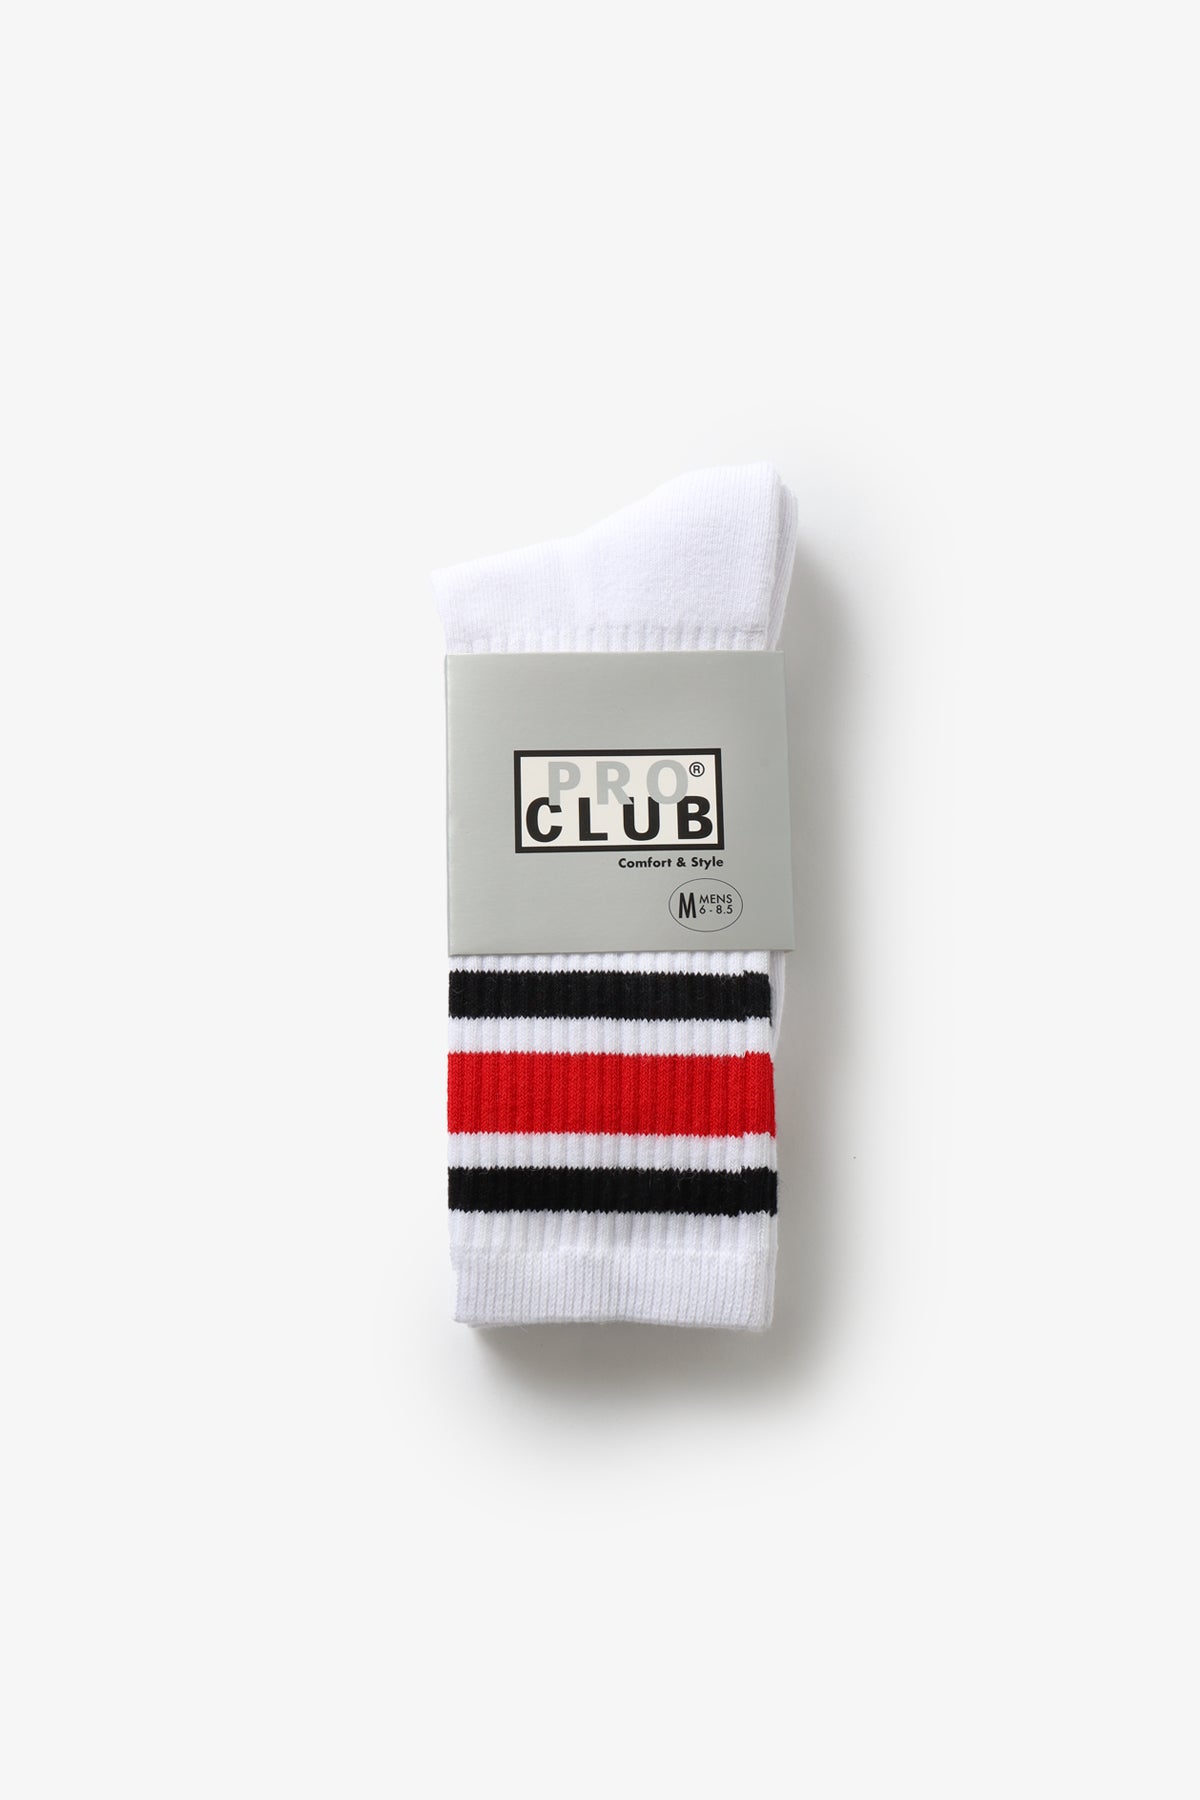 Pro Club - Striped Crew Socks - Red/Black